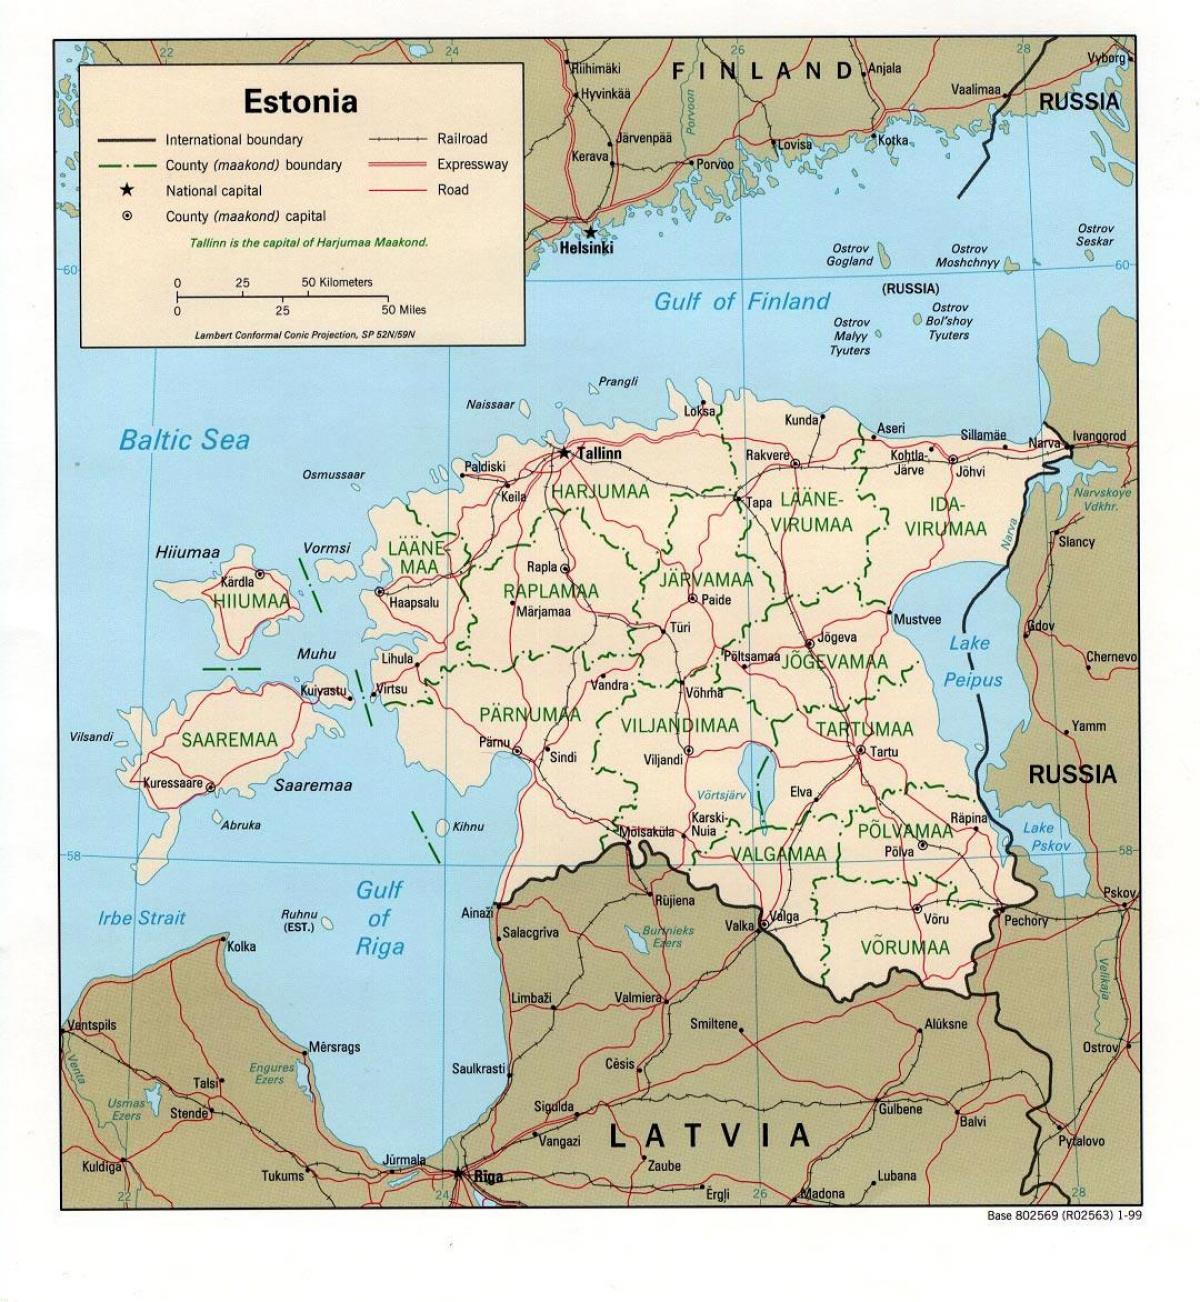 зураг Эстони газрын байршил